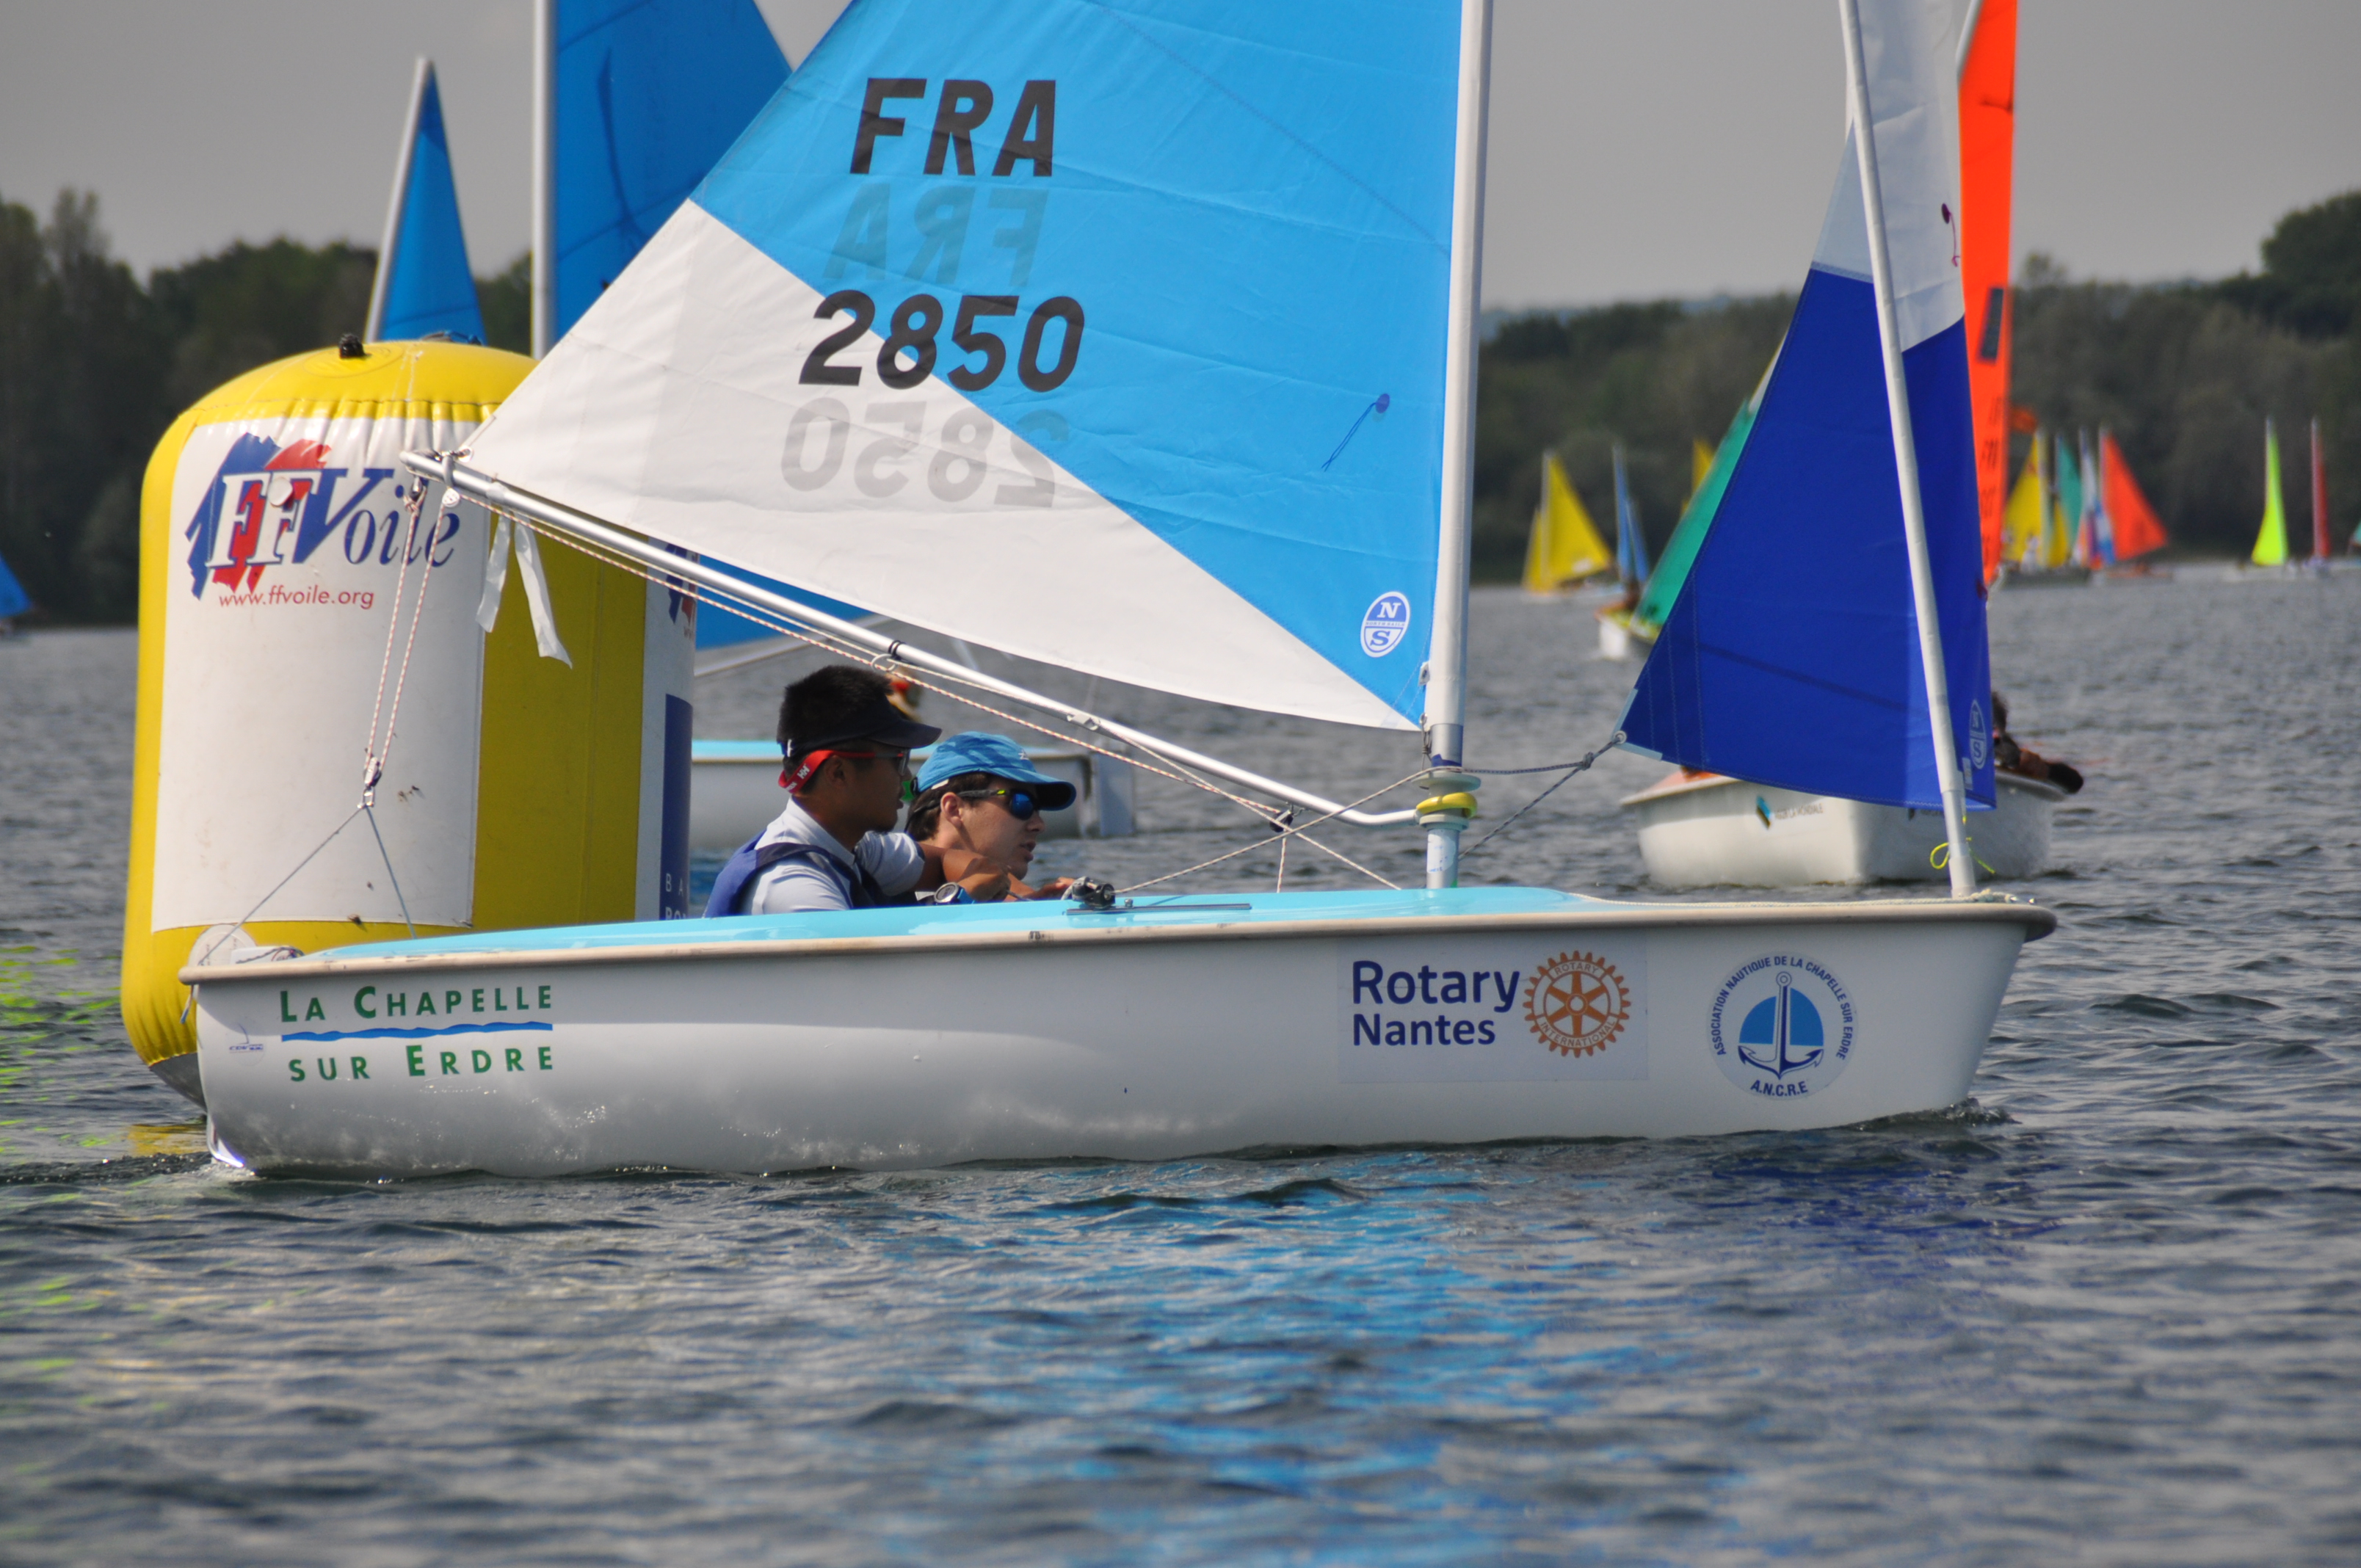 Un hansa 303 sur l'eau arborent les couleurs du Rotary de Nantes, le sponsor qui a participé à financer le bateau